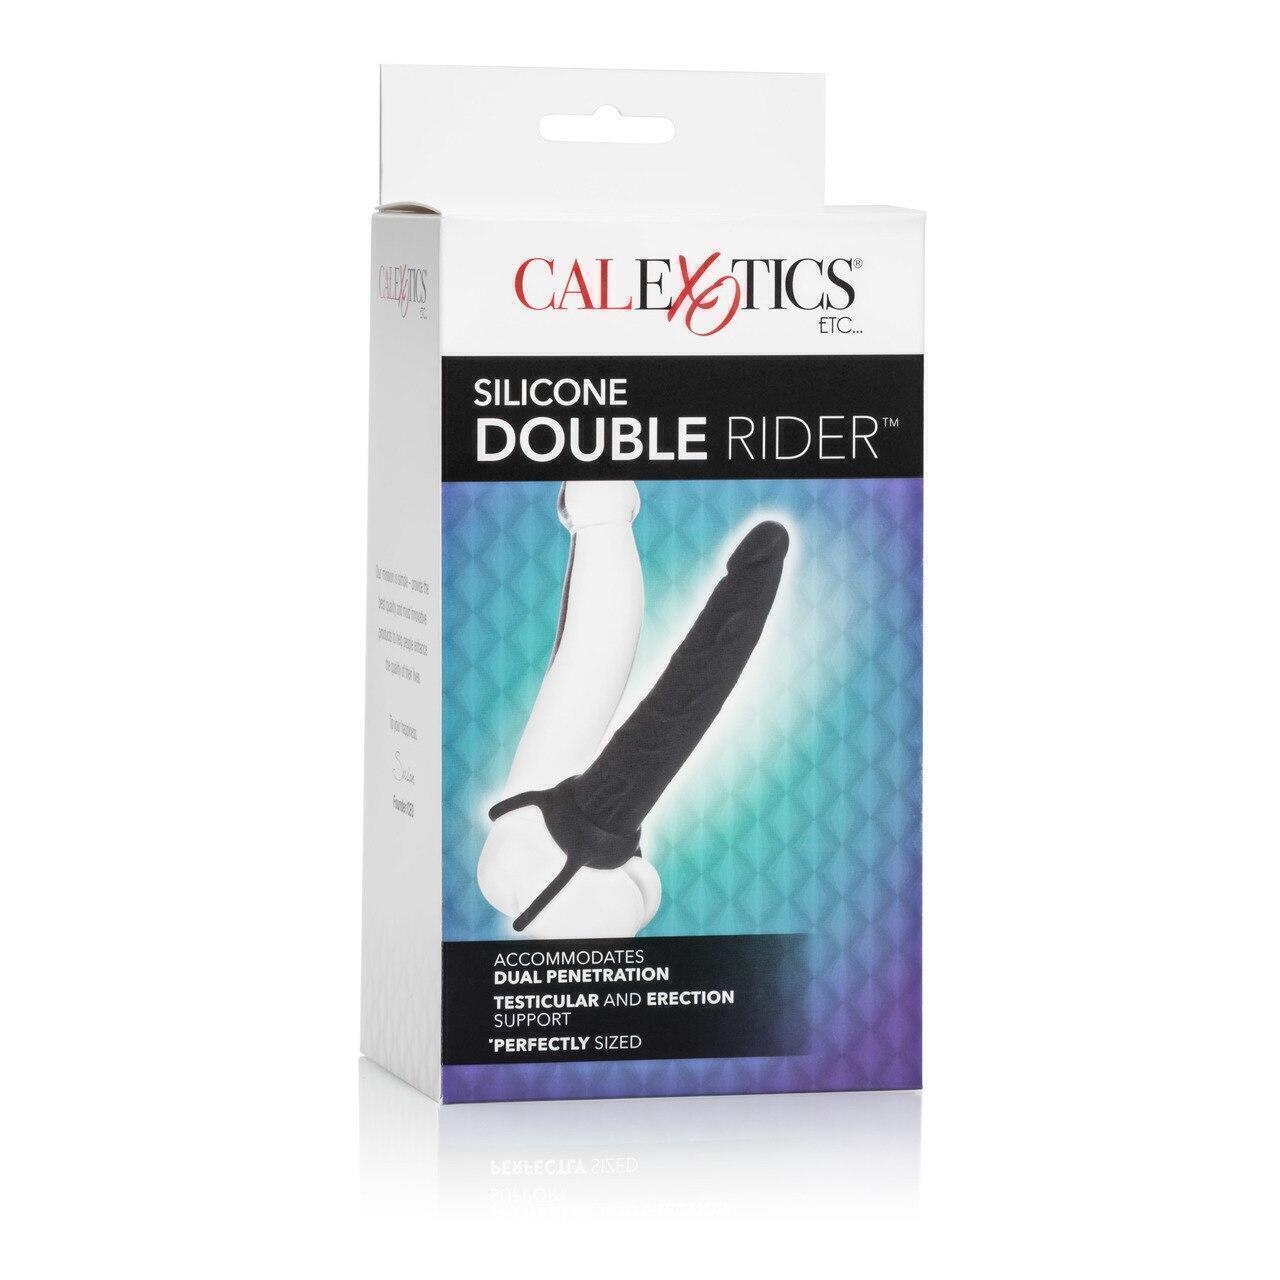 Насадка для двойного проникновения CalExotics Silicone Double Rider, черный